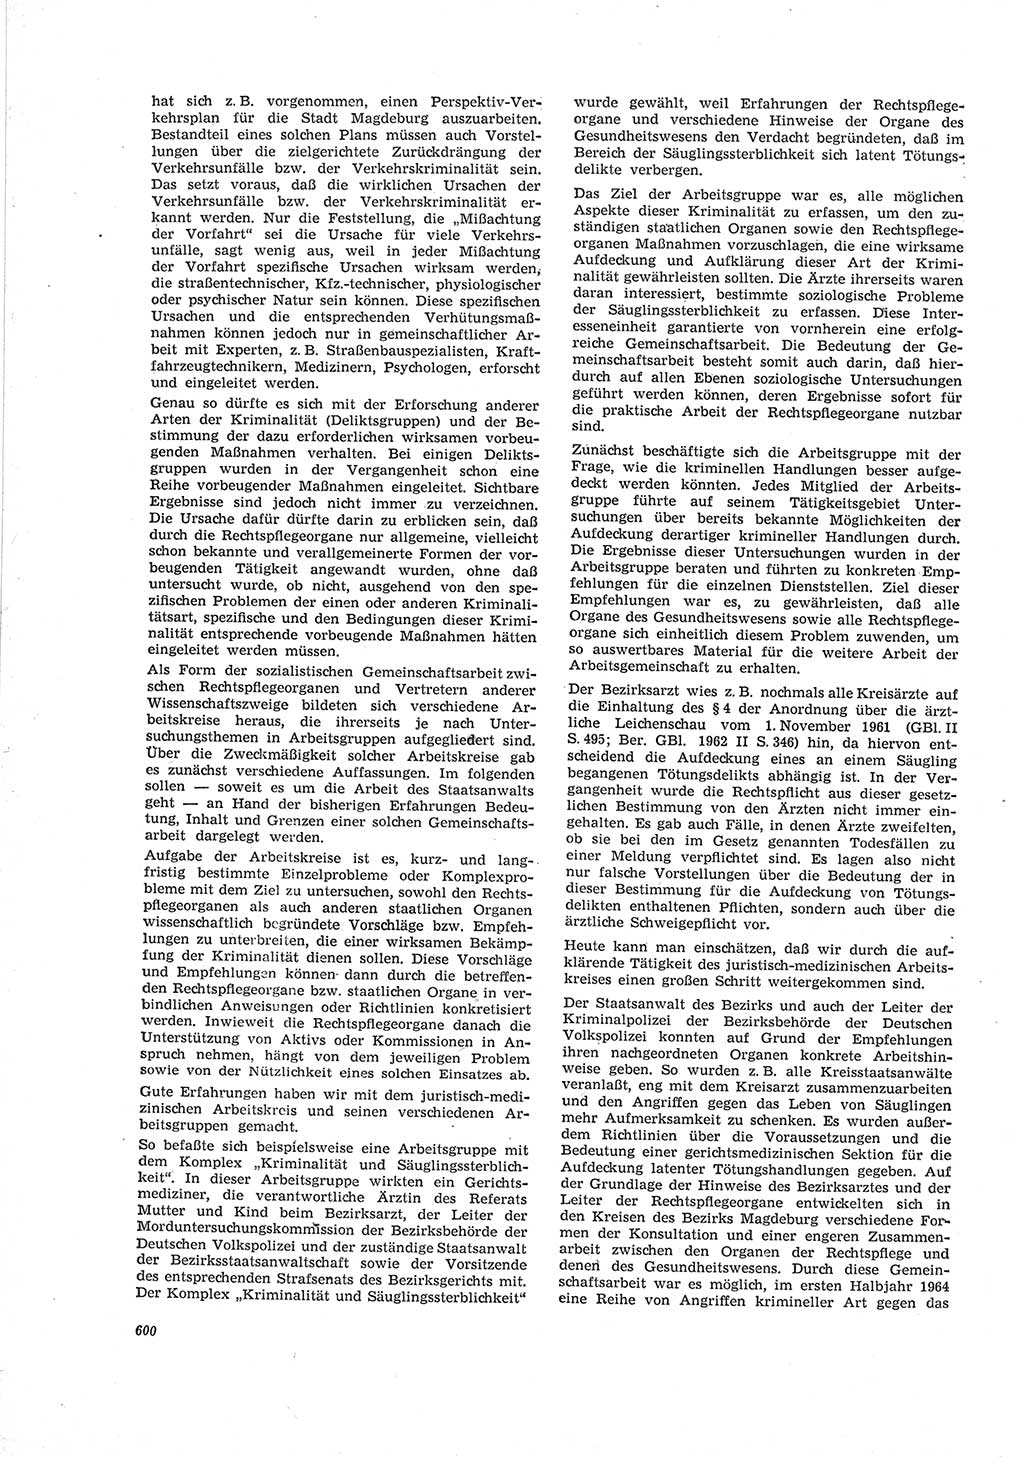 Neue Justiz (NJ), Zeitschrift für Recht und Rechtswissenschaft [Deutsche Demokratische Republik (DDR)], 19. Jahrgang 1965, Seite 600 (NJ DDR 1965, S. 600)